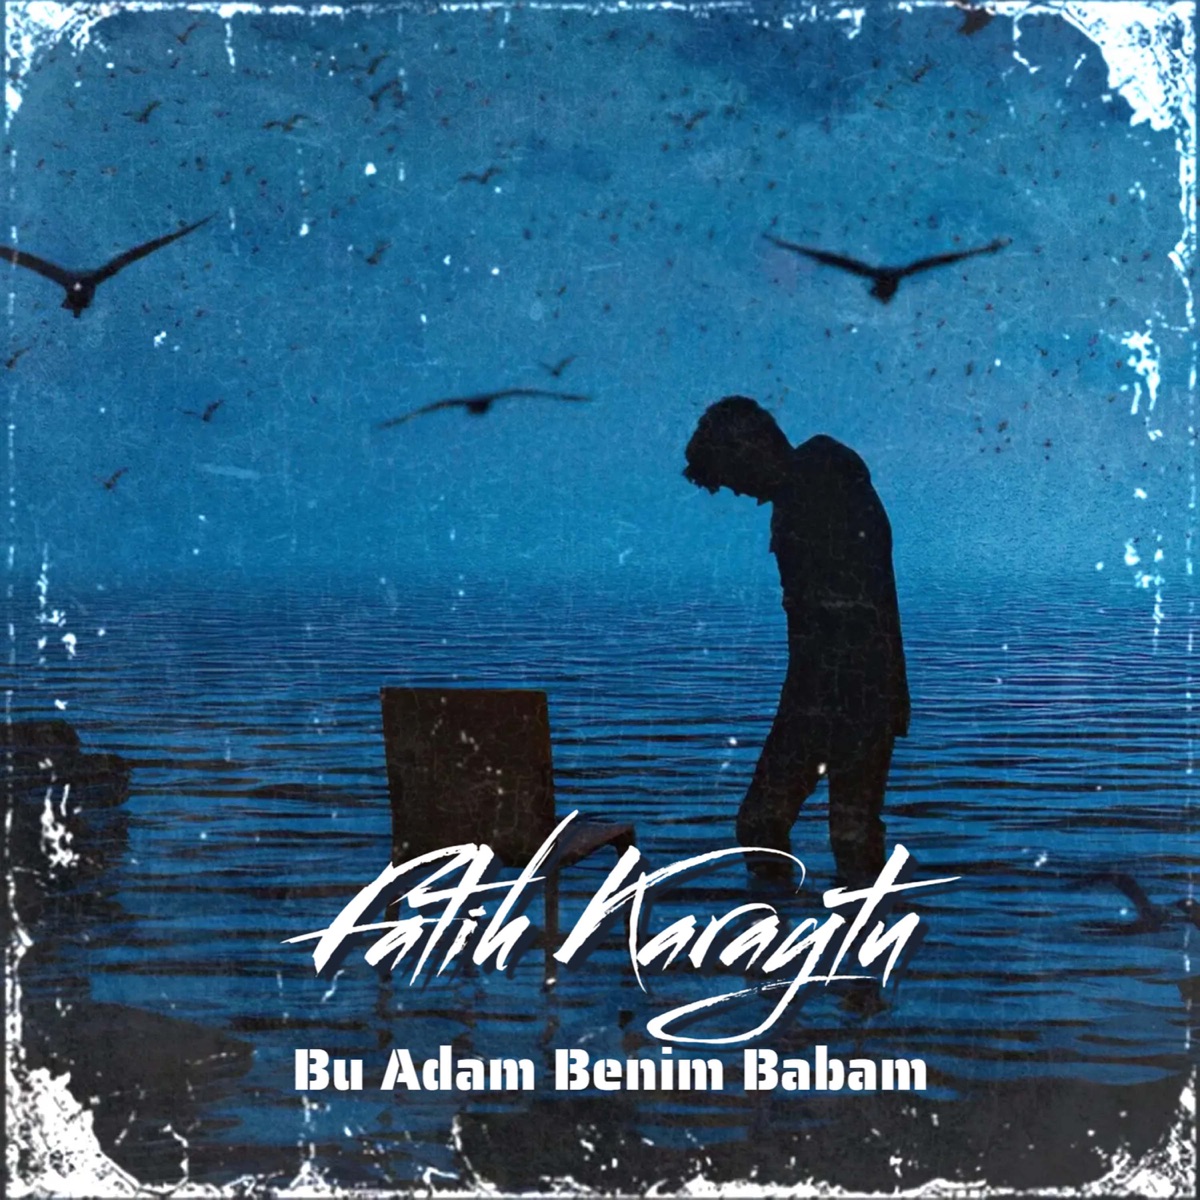 Bu Adam Benim Babam - Single - Album by Fatih Karaytu - Apple Music